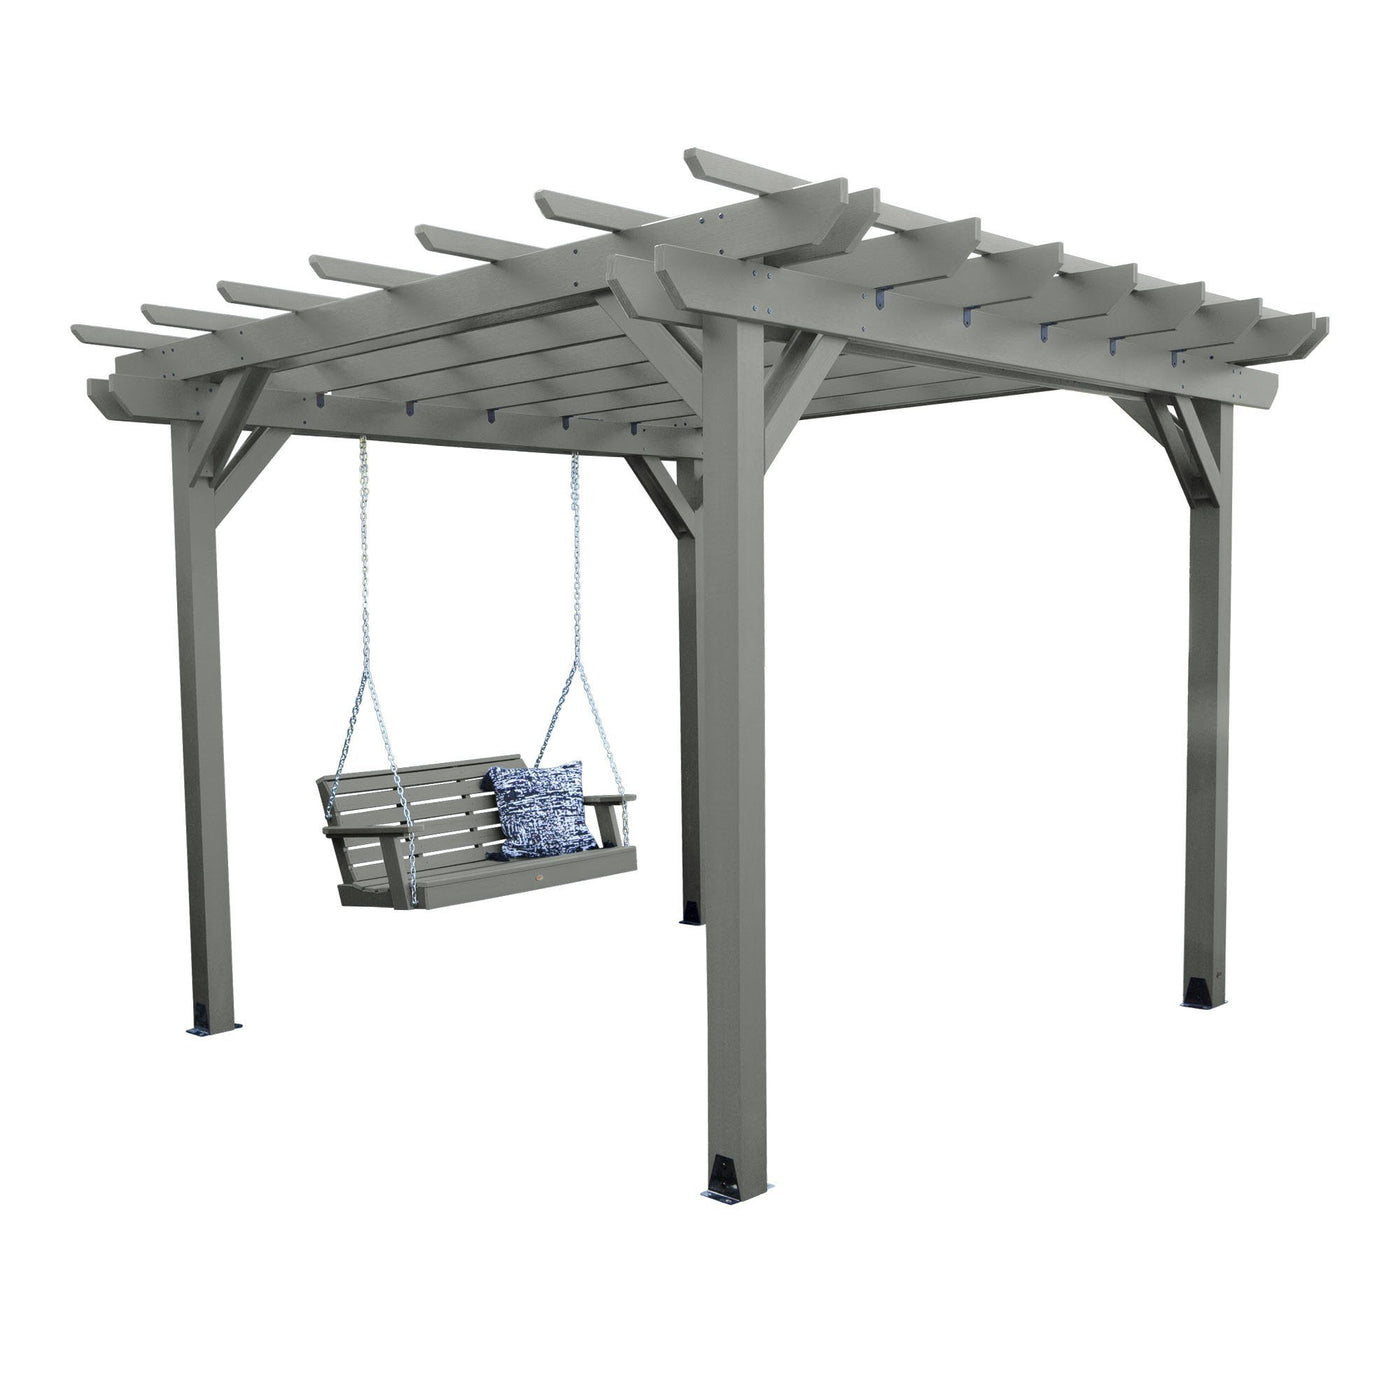 Bodhi 10’ x 12’ DIY Pergola with 4’ Weatherly Porch Swing Highwood USA Coastal Teak 